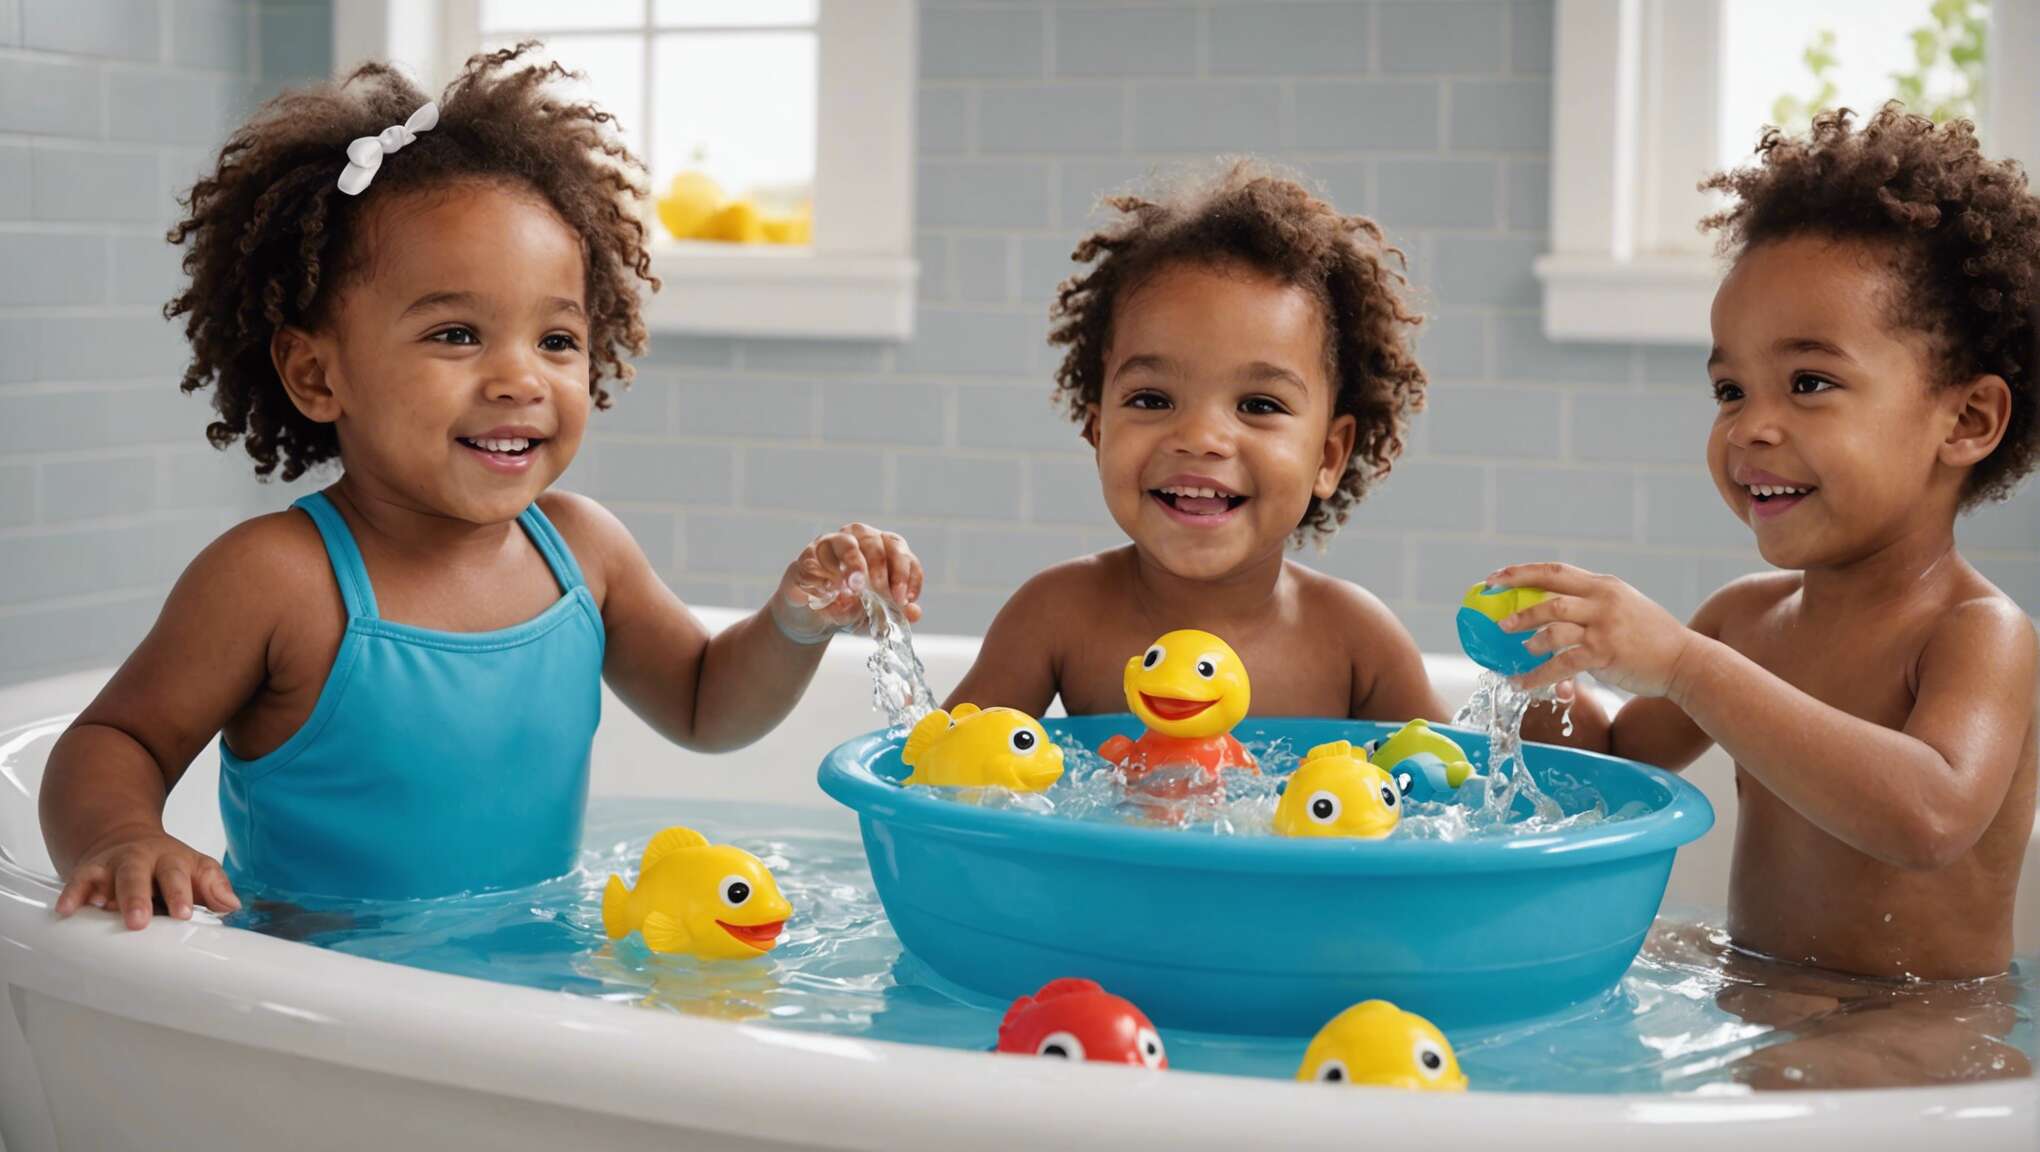 Diversifier les plaisirs du bain : idées de jeux et activités ludiques